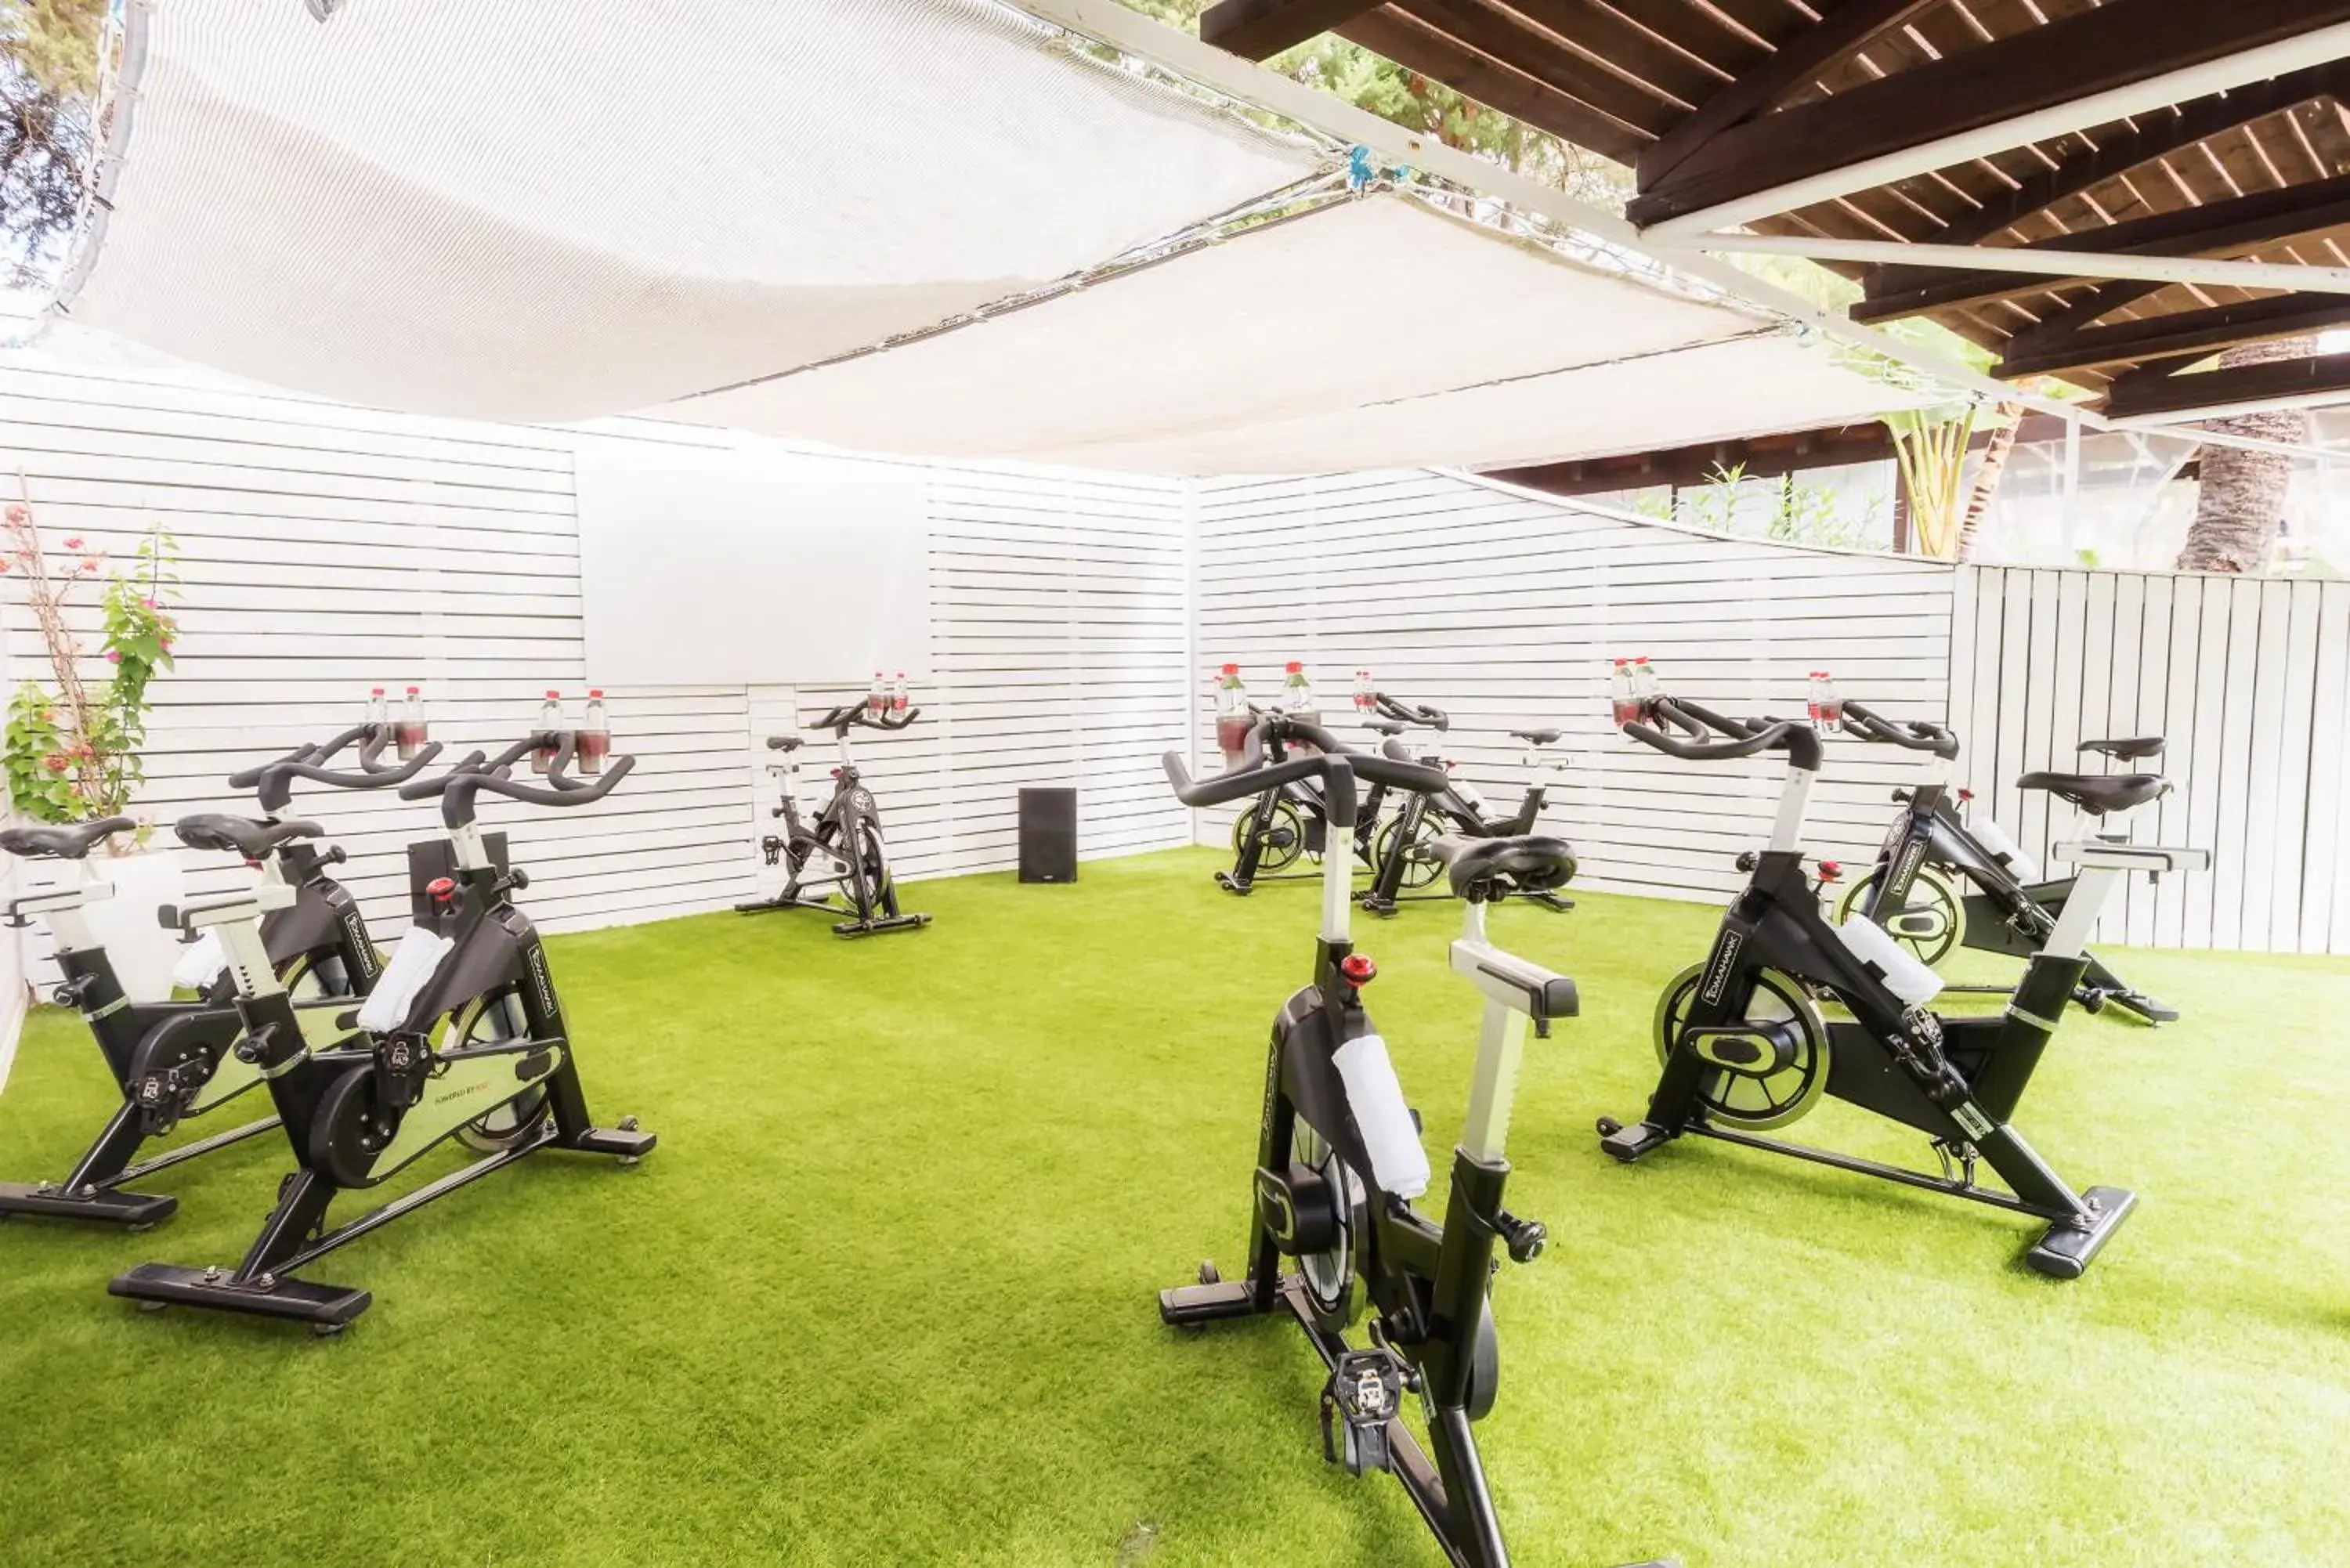 Fitness centre/facilities, Fitness Center/Facilities in Meliá Zahara Resort & Villas